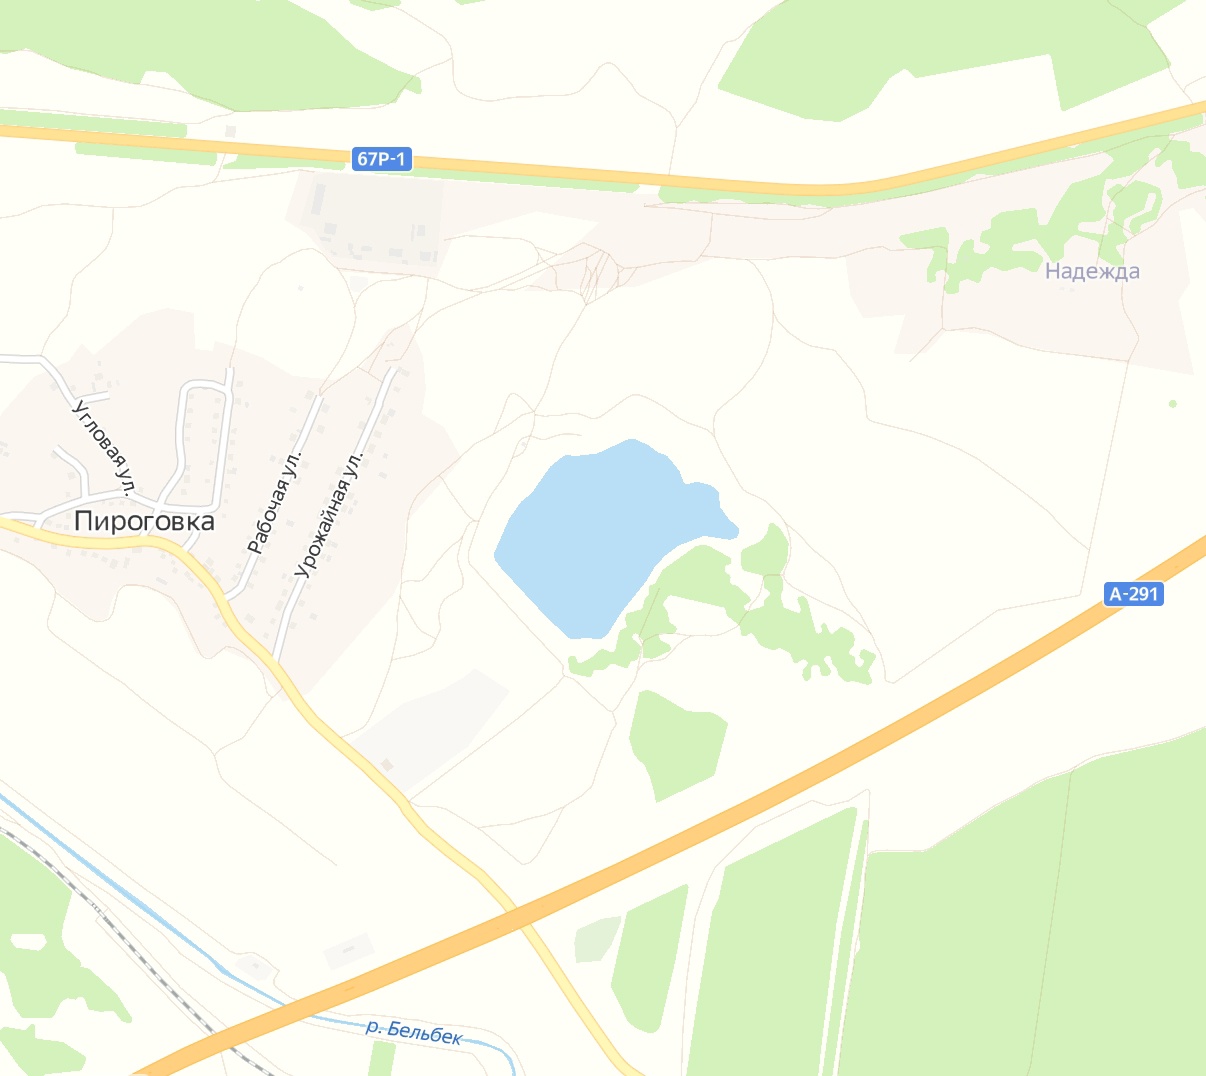 Правительство Севастополя «спохватилось»: фирму-«пустышку» выводят из СЭЗ через суд